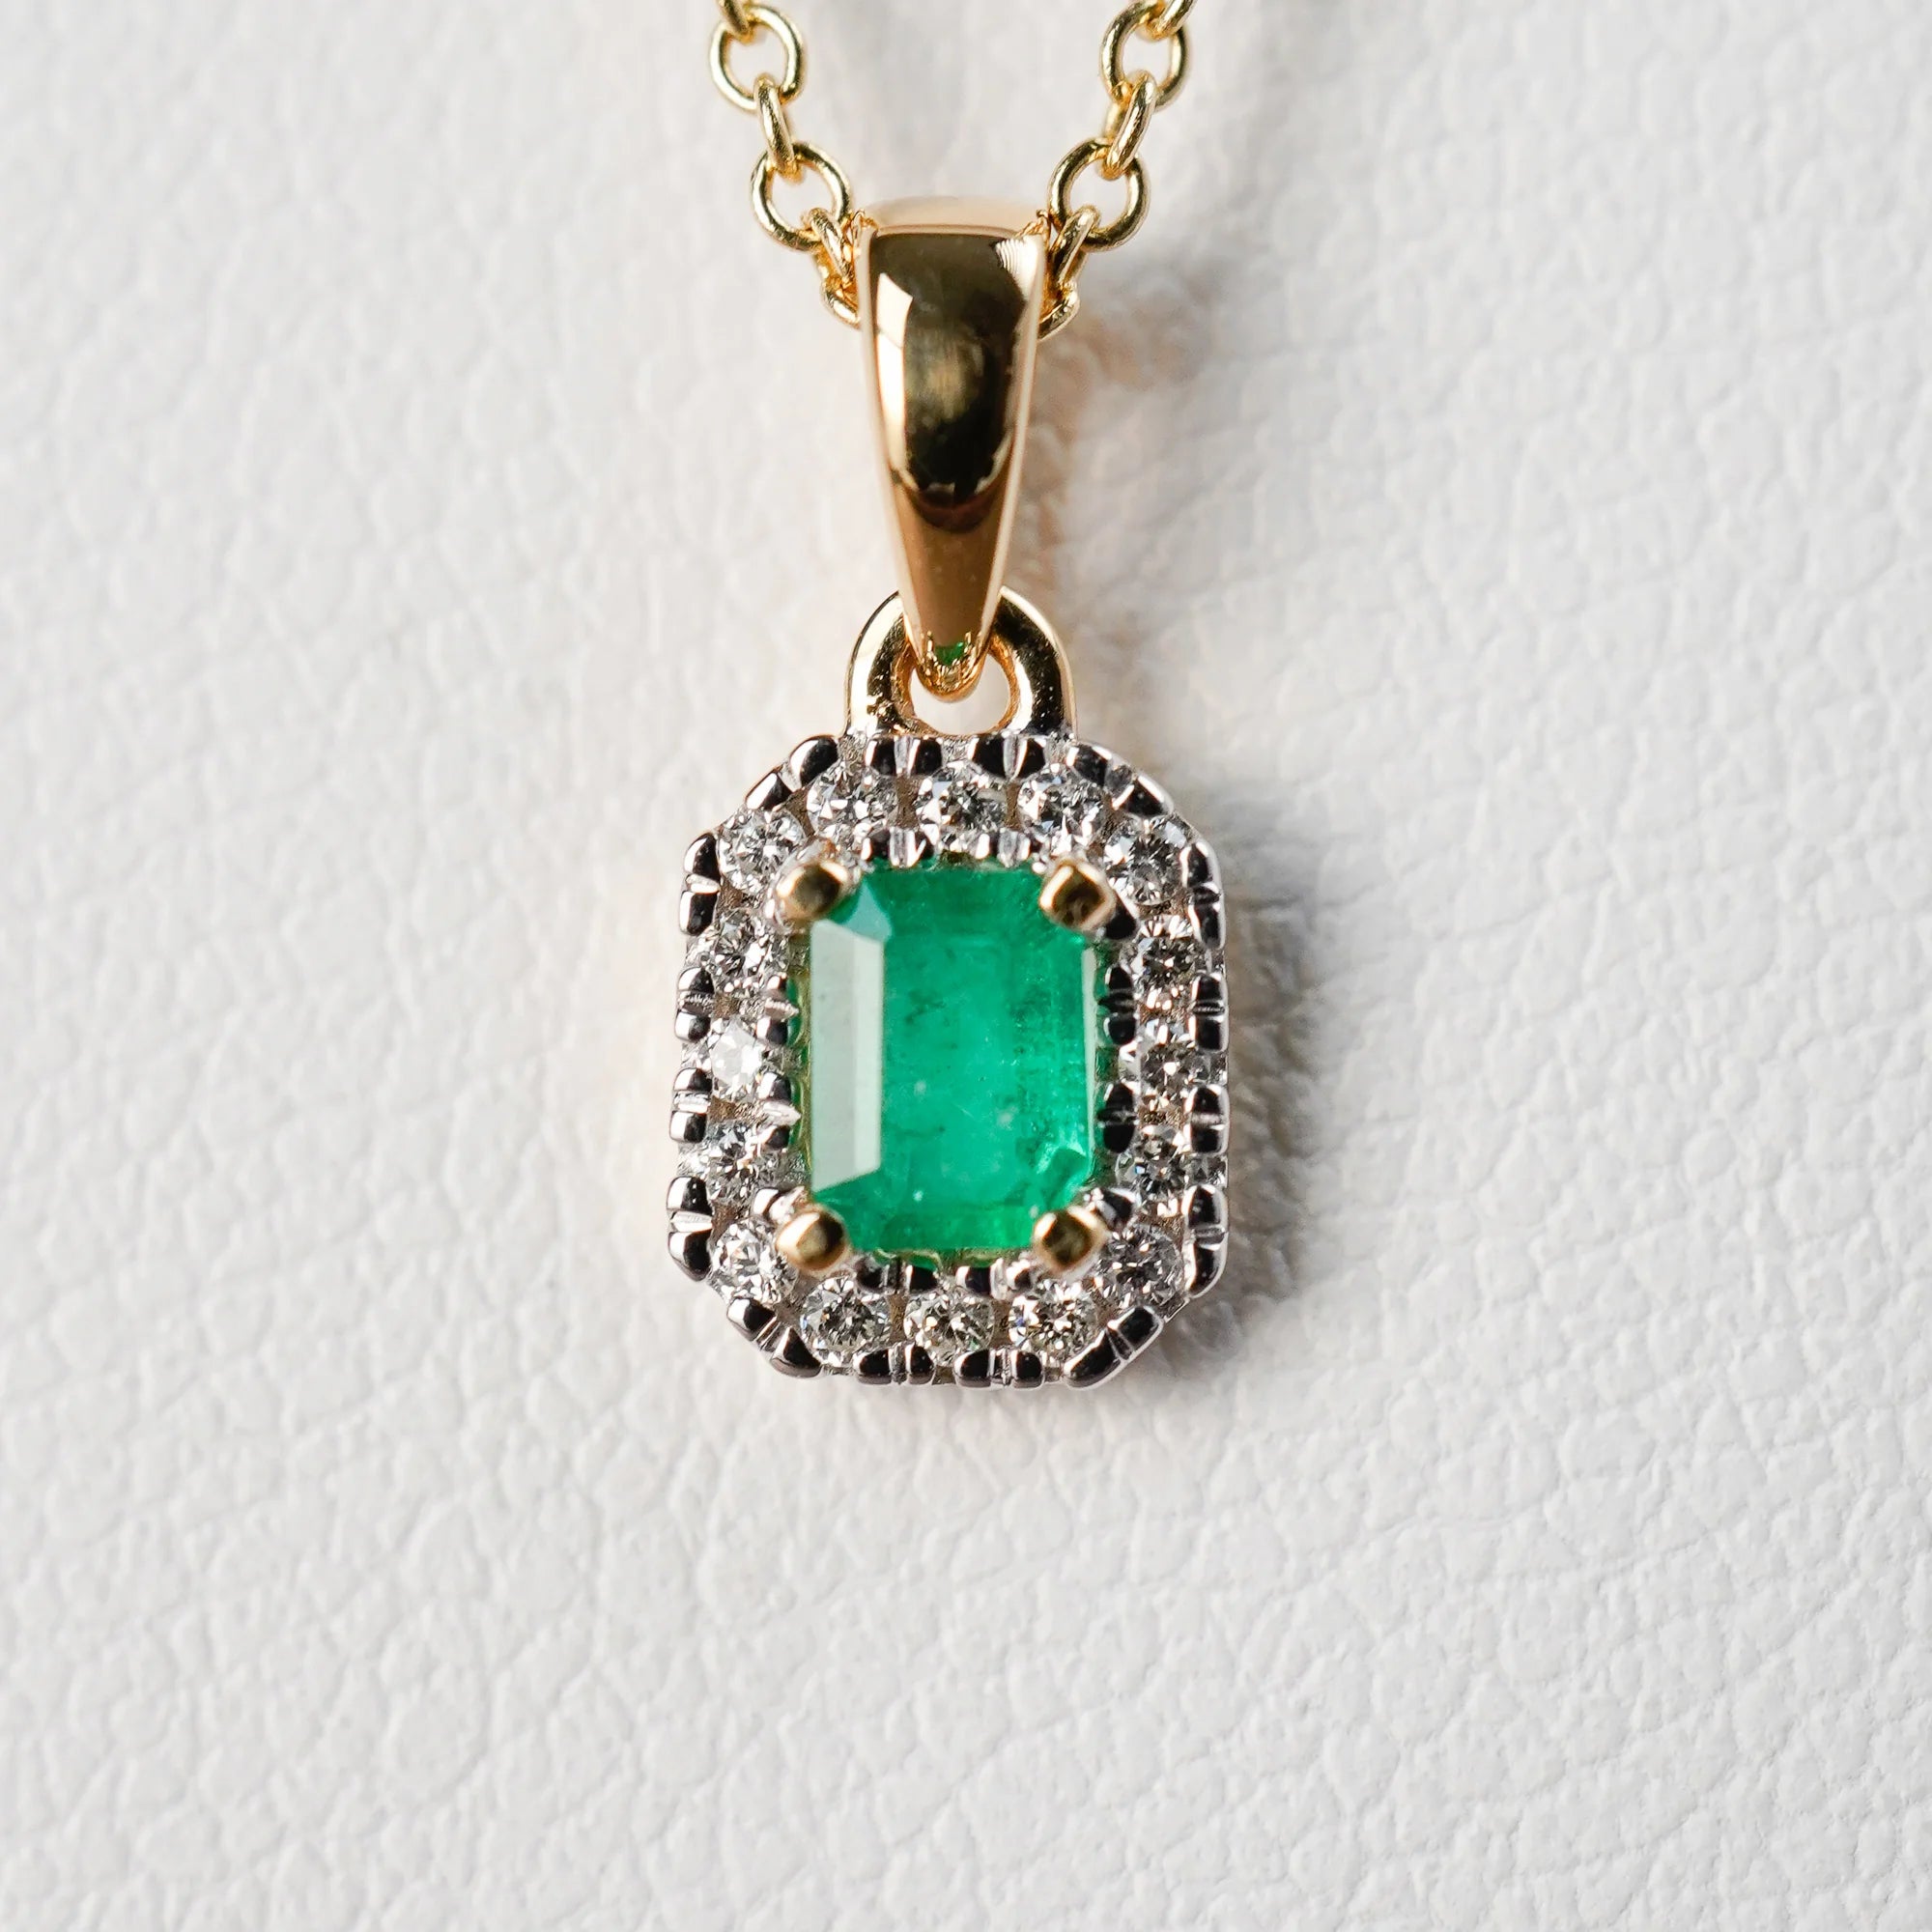 Detailaufnahme des Anhängers mit einem zentralen Smaragd mit einer kräftigen grünen Farbe, der von kleinen Diamanten umrandet ist, von der Smaragd-Brillant-Kette aus der Schmuckatelier Lang Collection